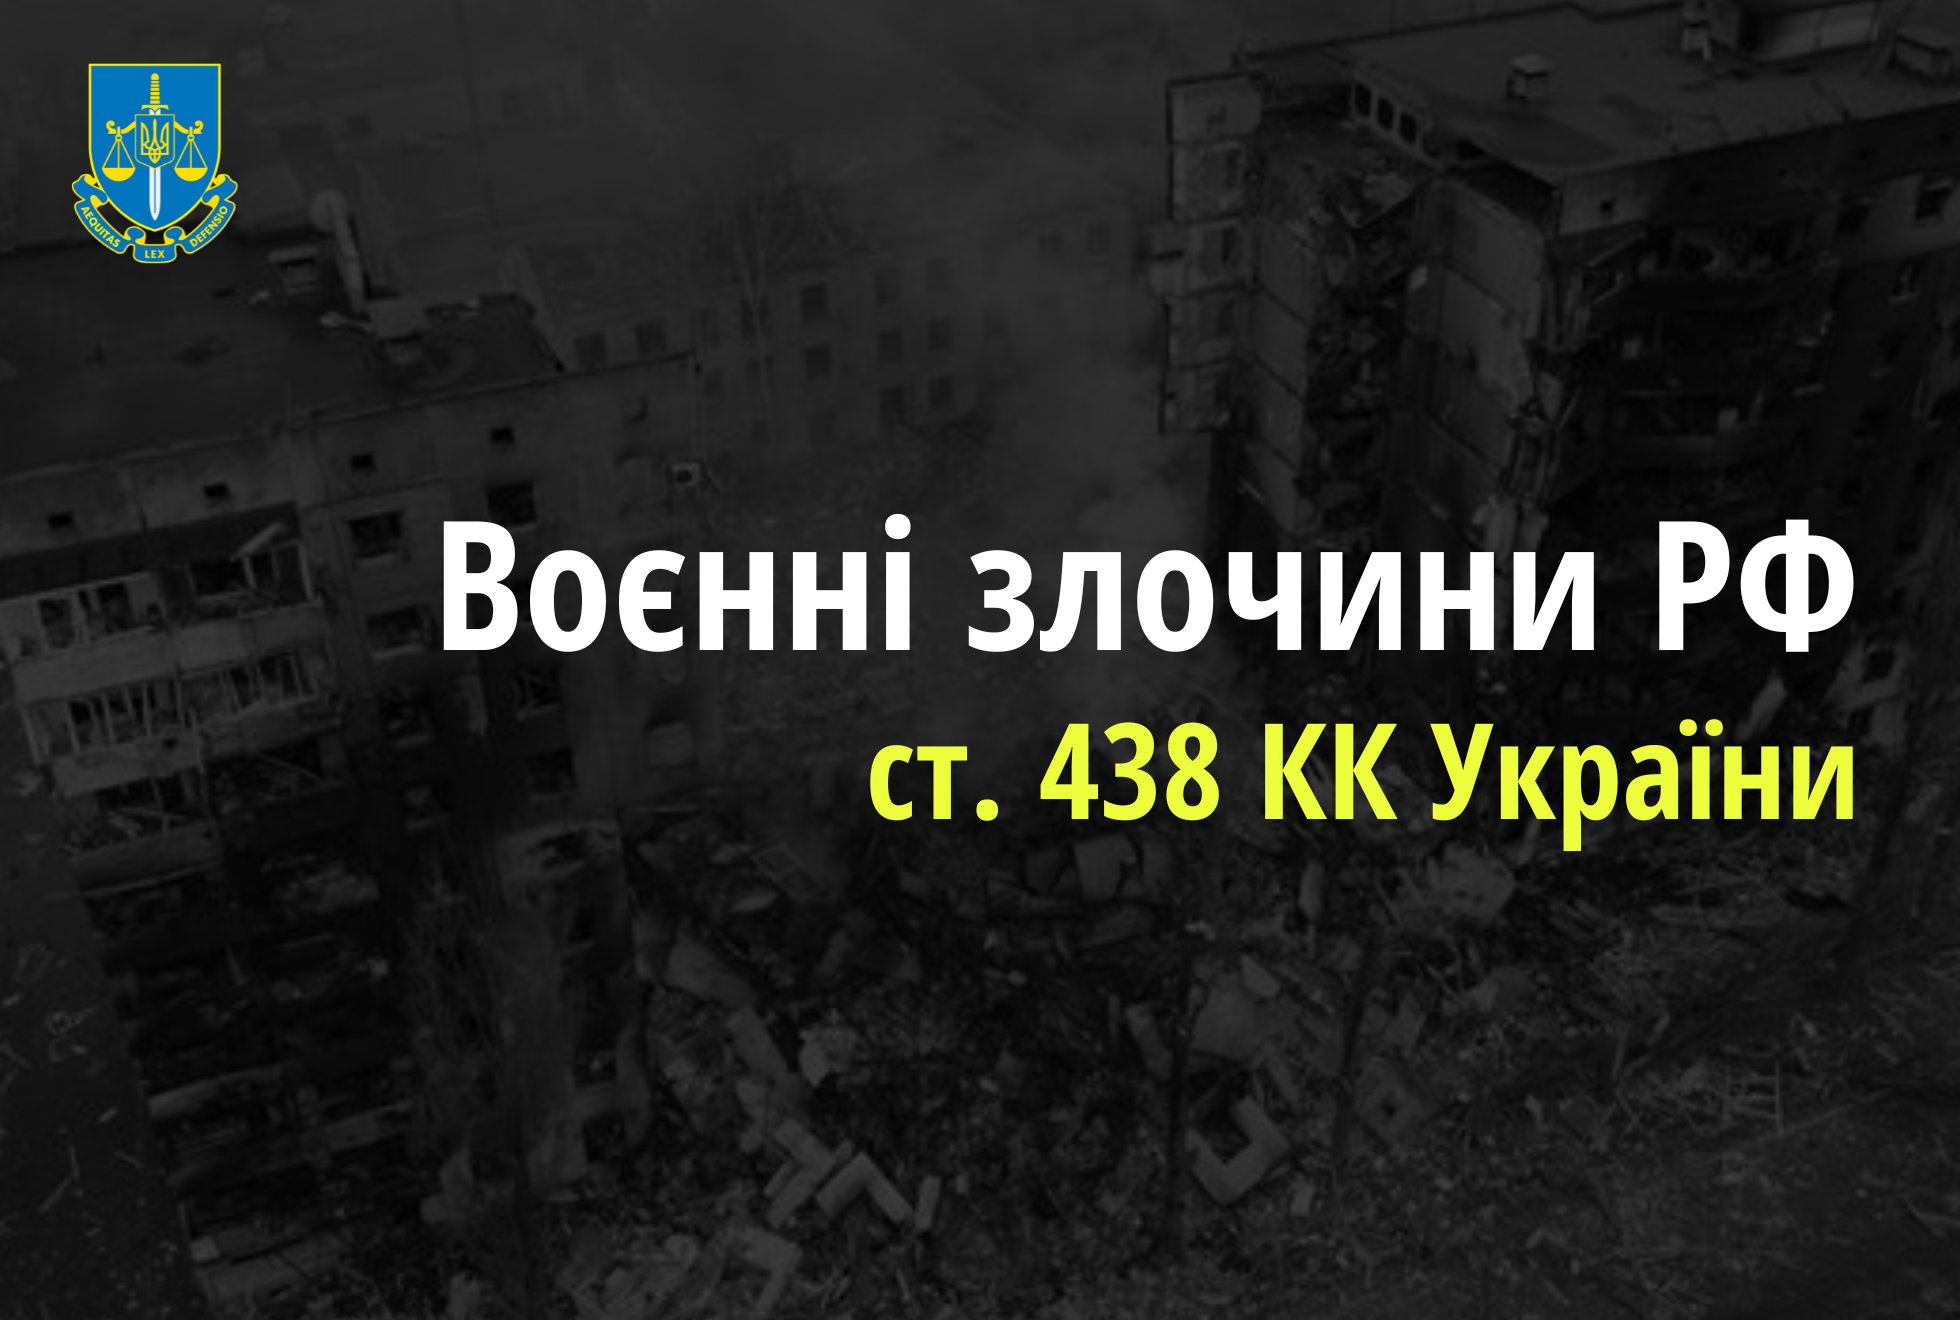 Загибель чотирьох жителів прикордонного села на Чернігівщині через обстріли – розпочато провадження